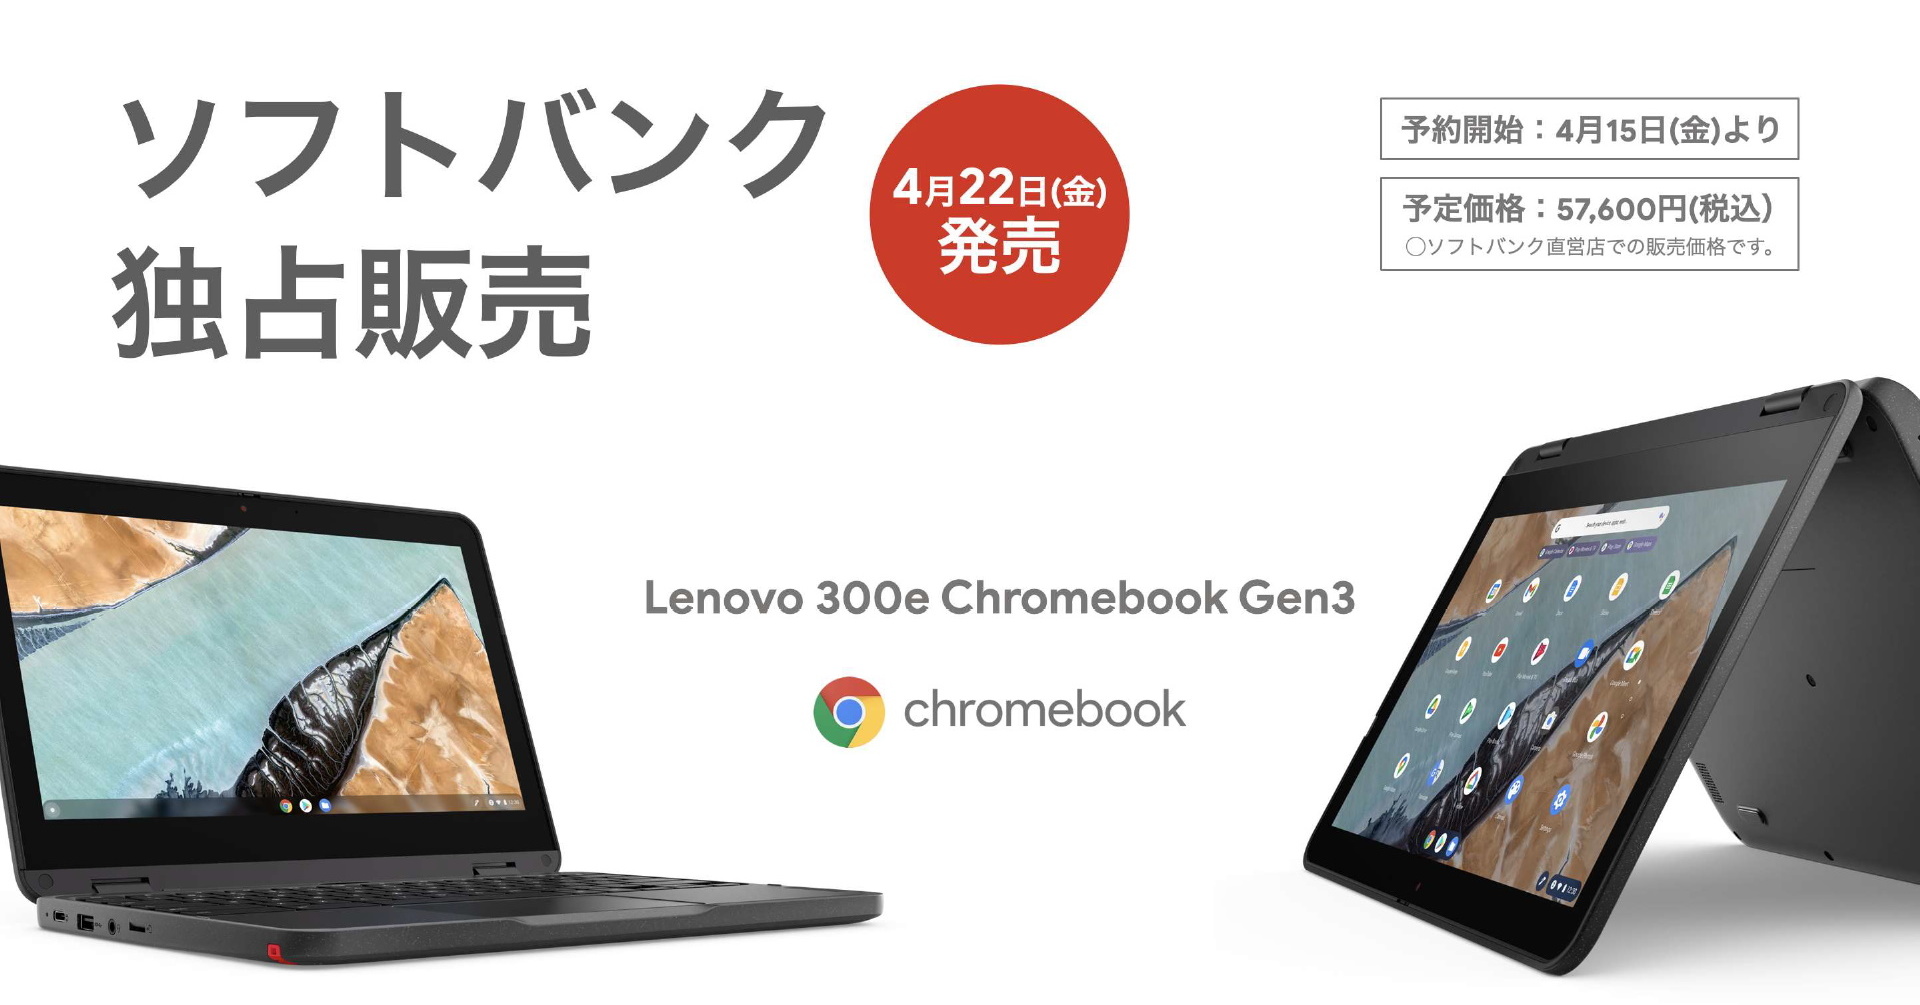 ソフトバンクが「Lenovo 300e Chromebook Gen 3」のLTEモデルを販売